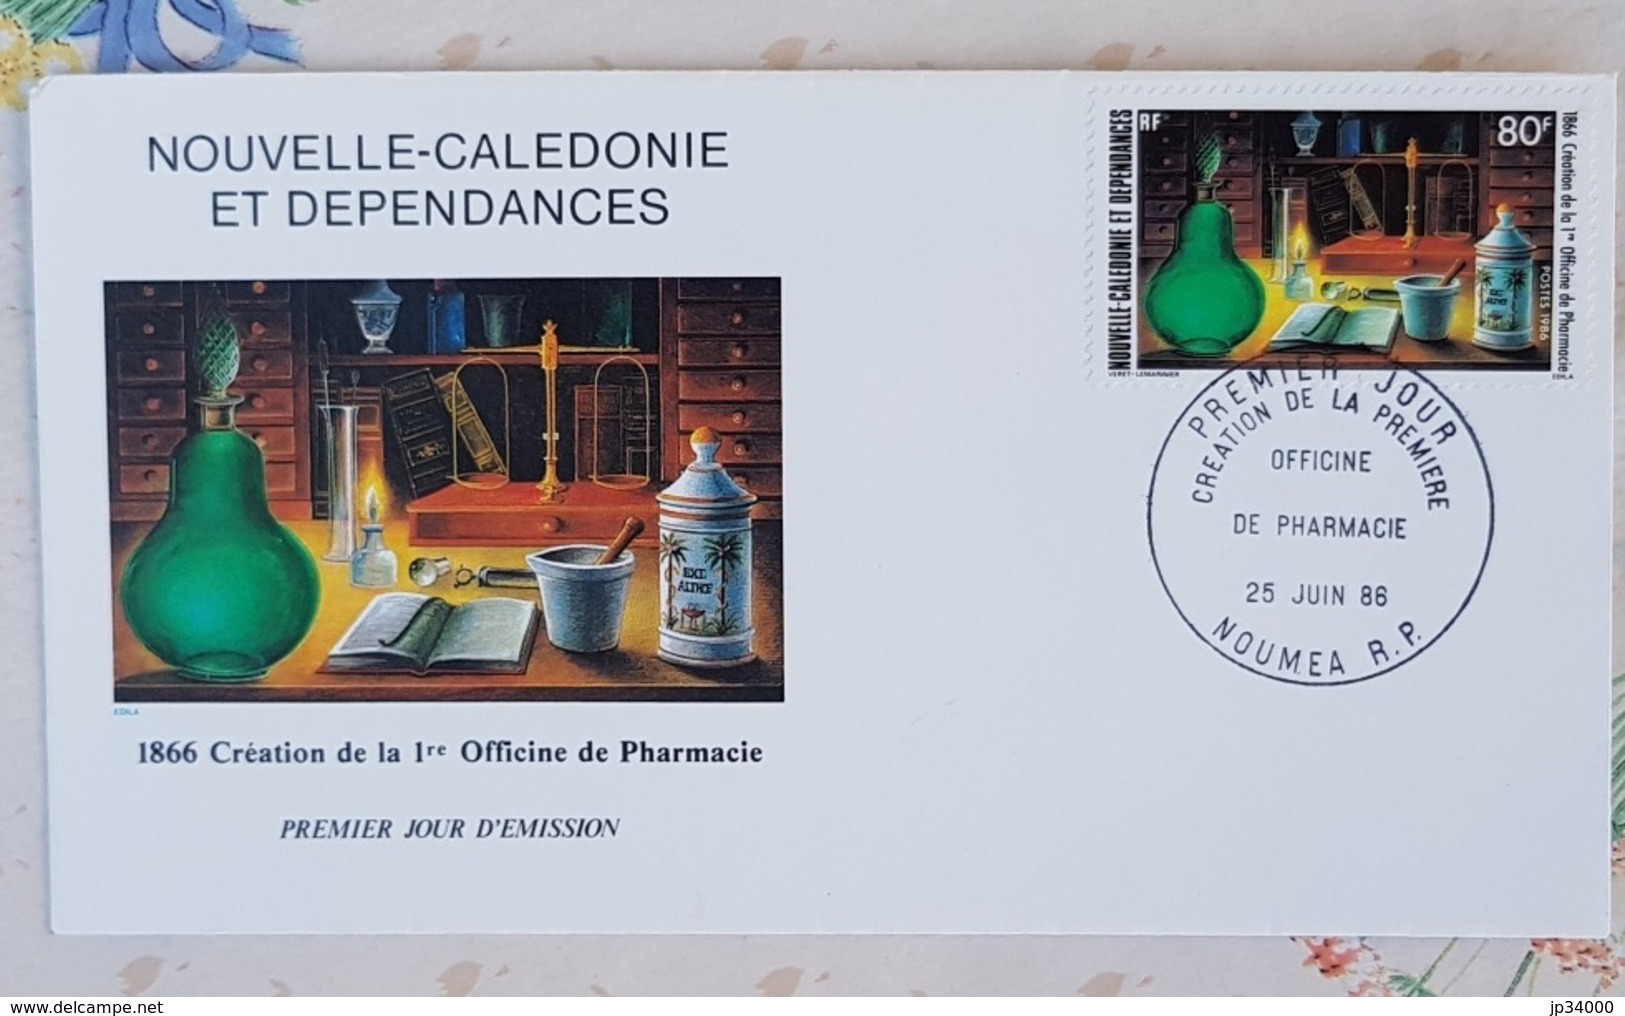 NOUVELLE CALEDONIE Phamarcie, Medecine,Yvert N°519 Officine De Pharmacie FDC, Enveloppe 1er Jour - Farmacia